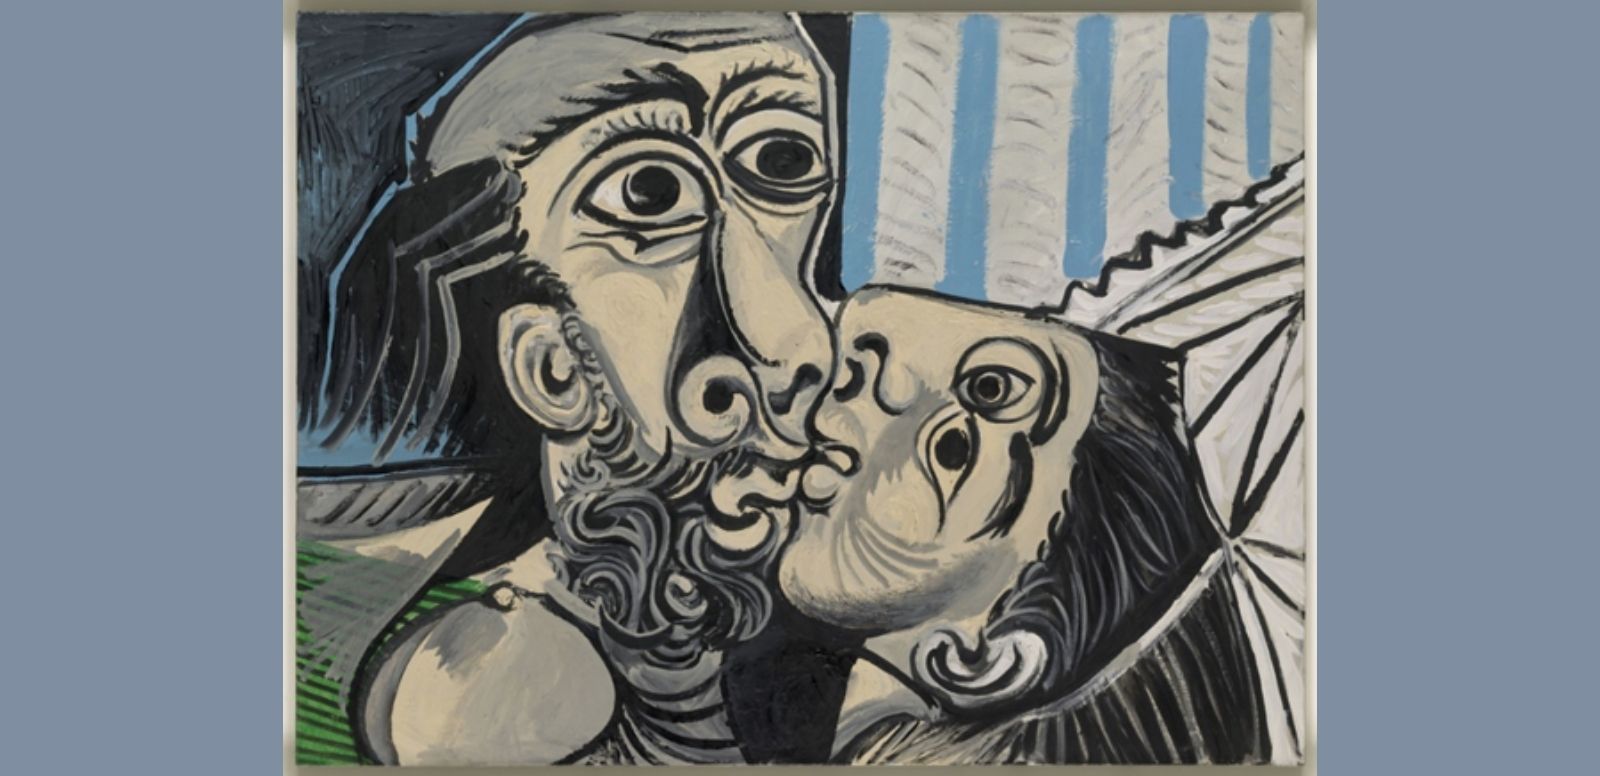 Pablo Picasso, “El beso”, 1969, 